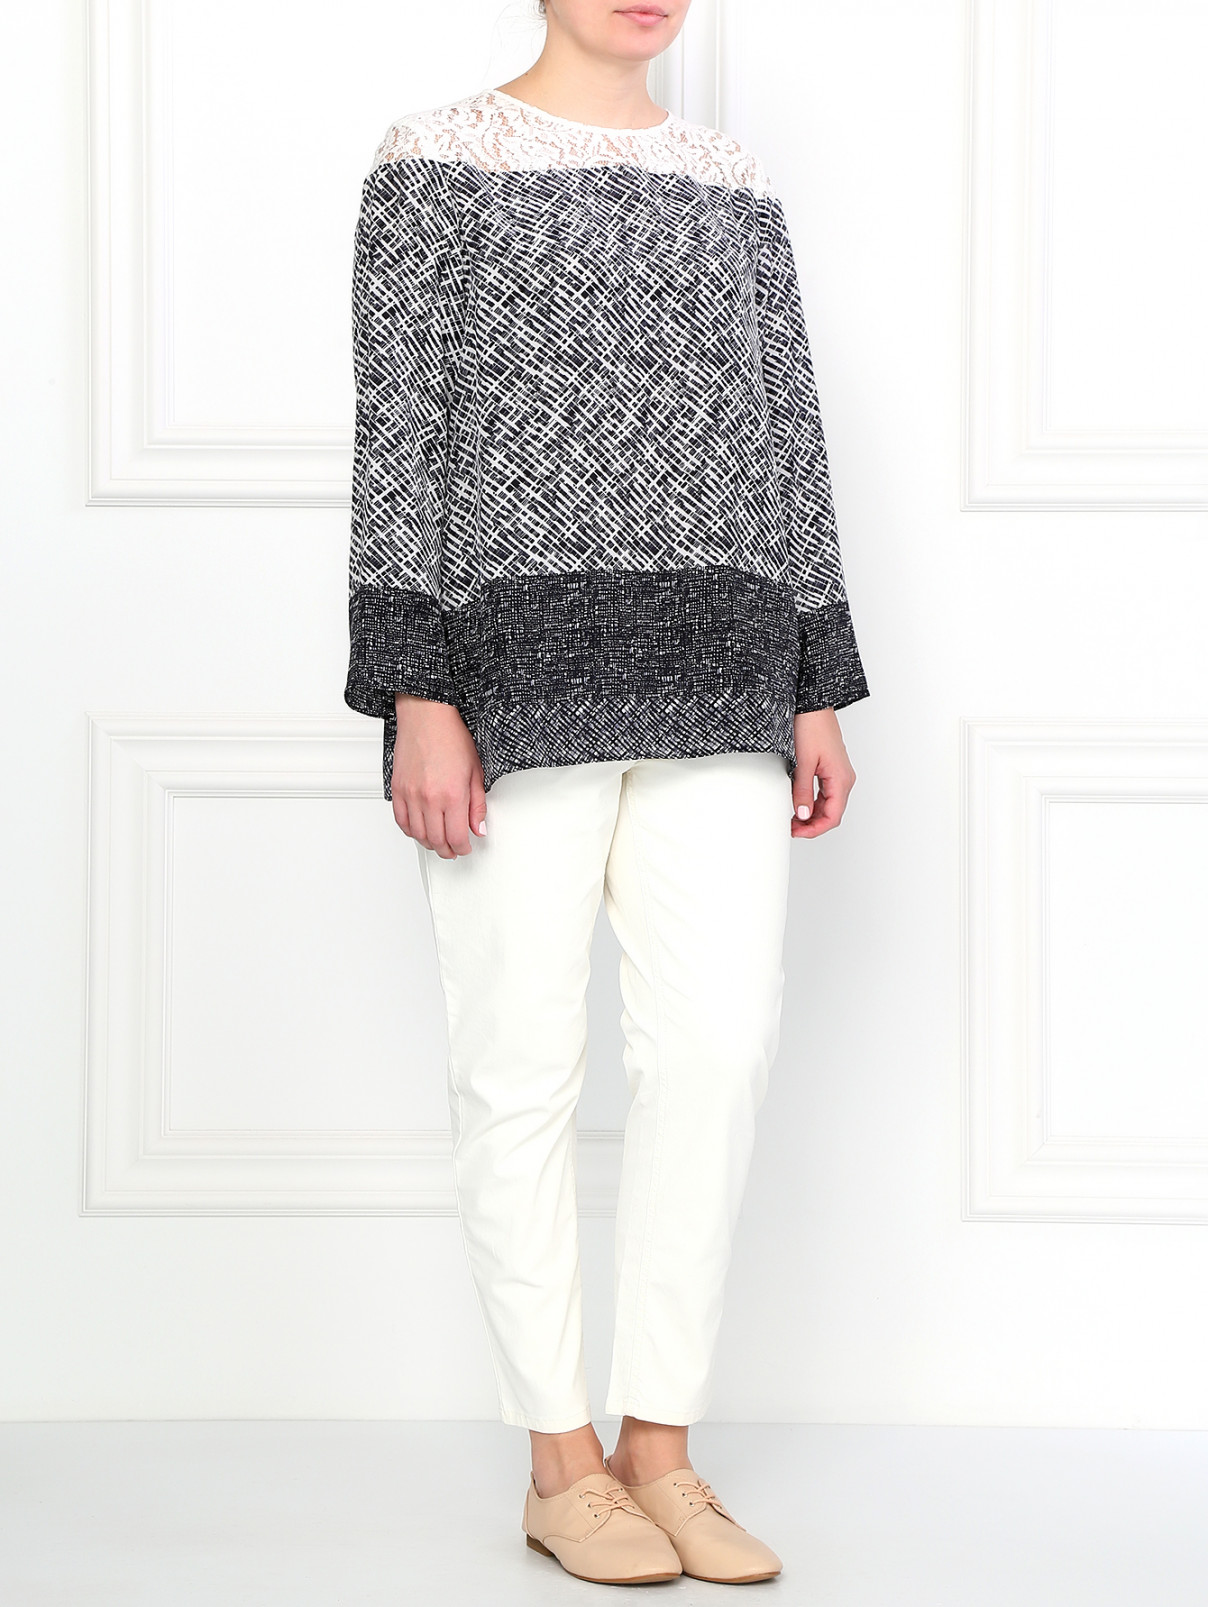 Шелковая блуза с кружевной вставкой Marina Rinaldi  –  Модель Общий вид  – Цвет:  Узор